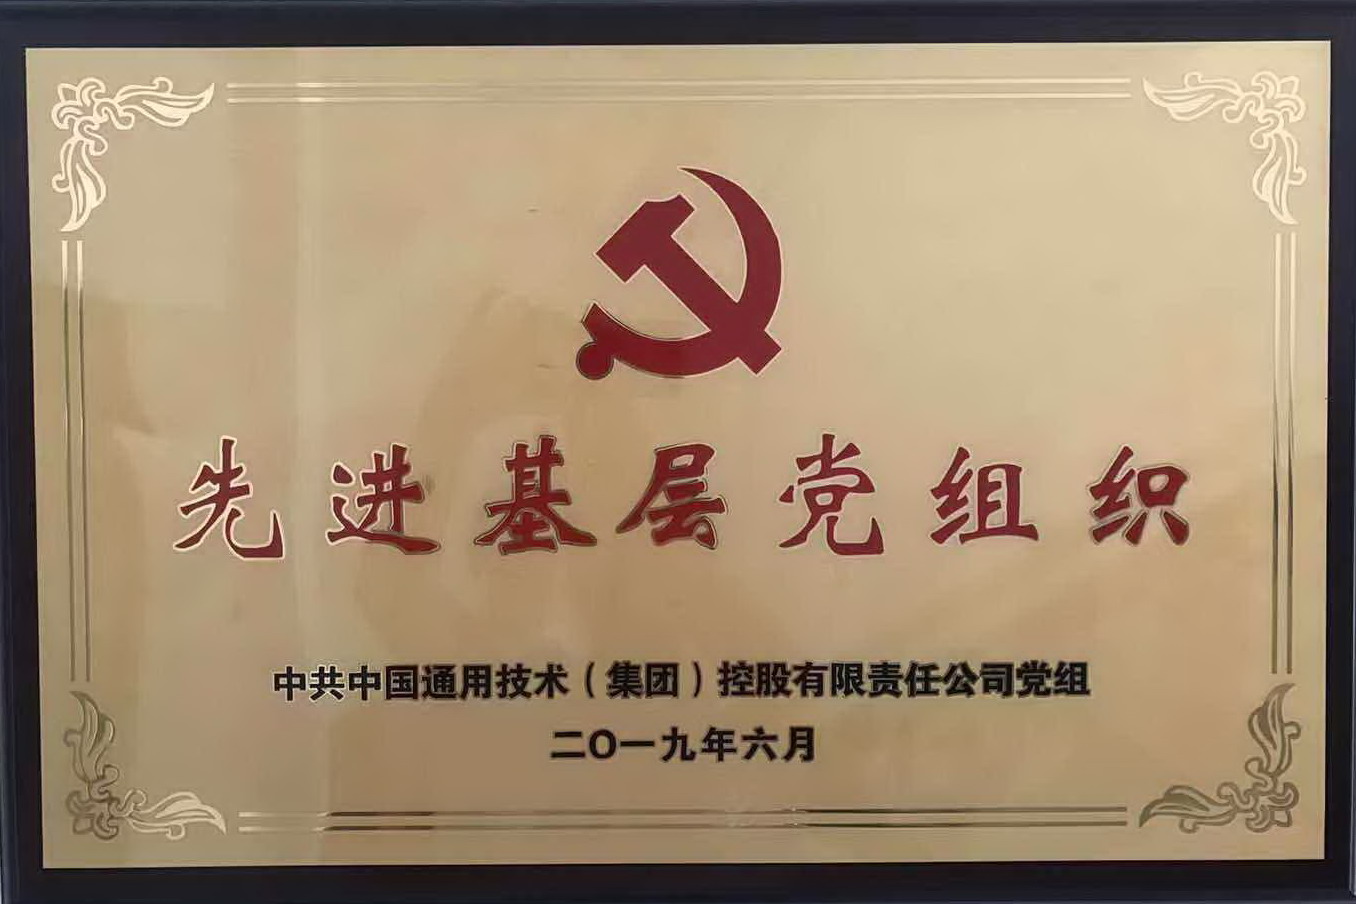 研发中心党支部被通用集团党组授予“先进基层党组织”的荣誉称号